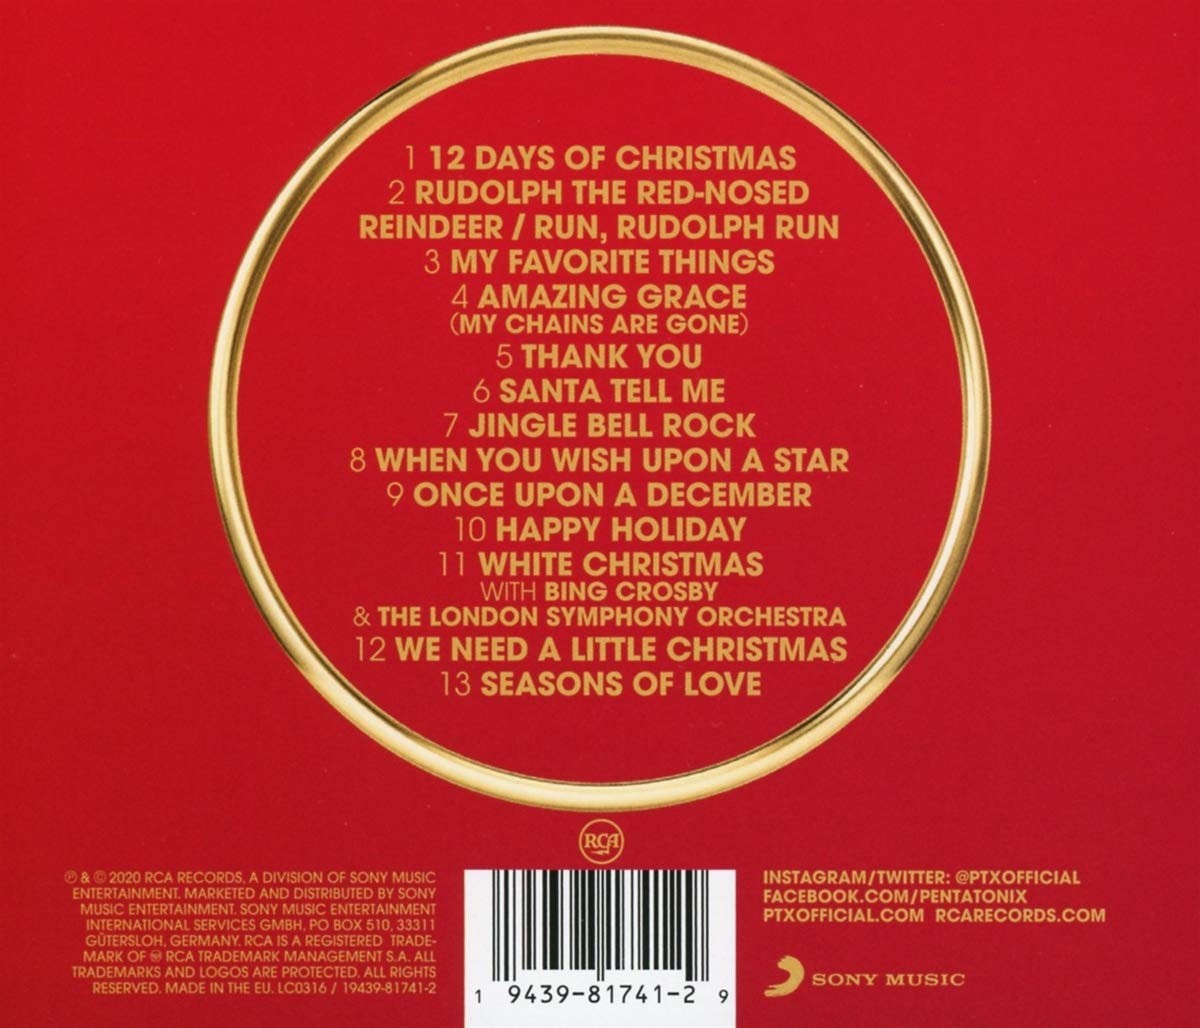 Pentatonix (펜타토닉스) - We Need A Little Christmas 